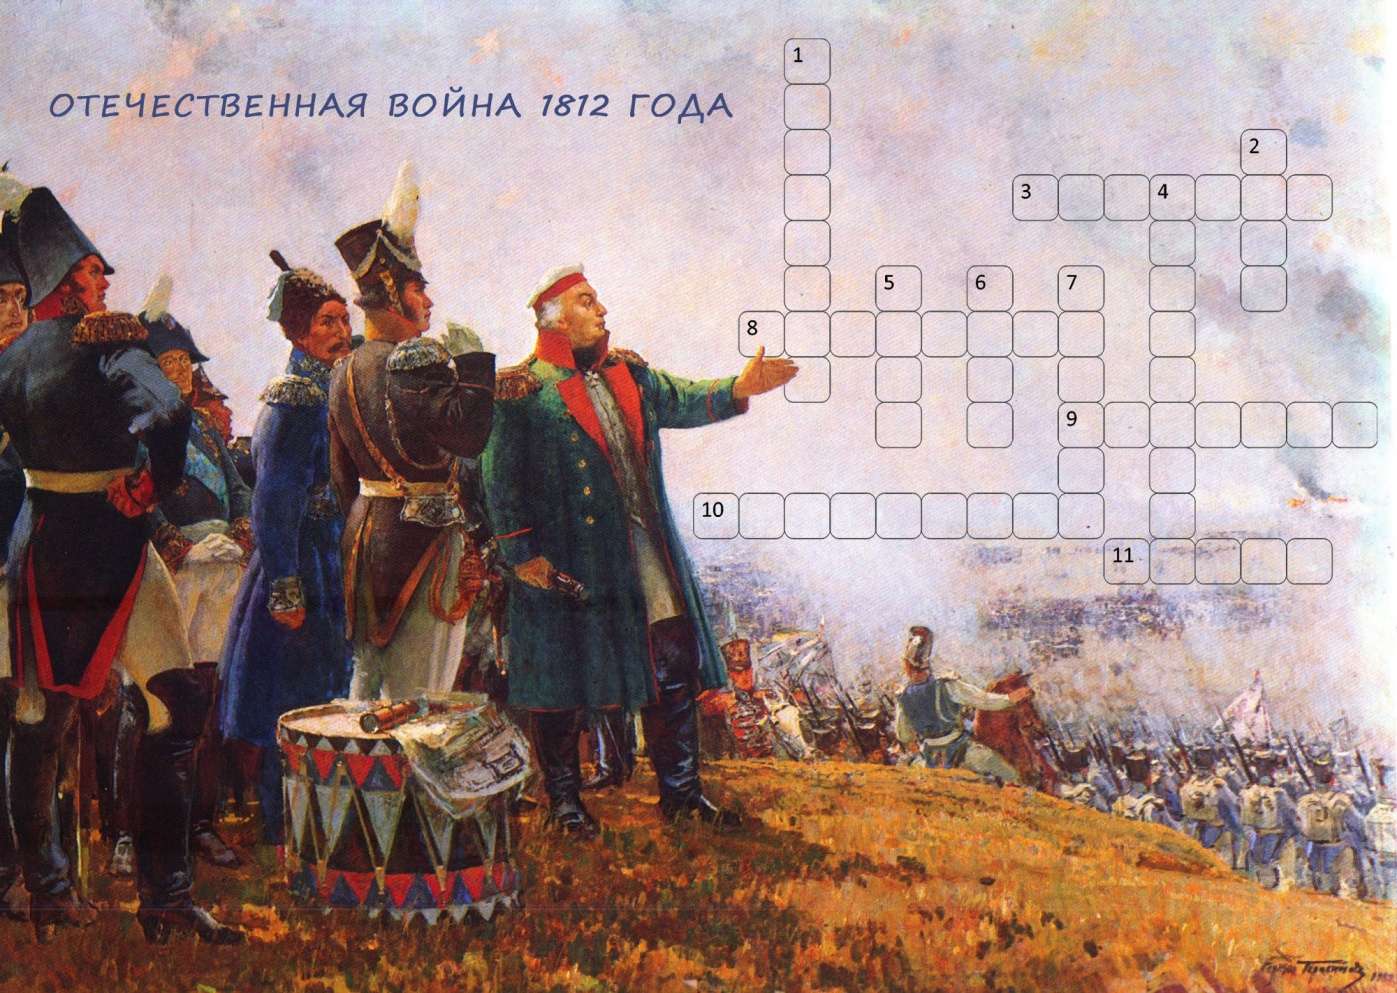 Сценарий классного часа по теме Этих дней не смолкнет слава!, посвященного Отечественной войне 1812 года.